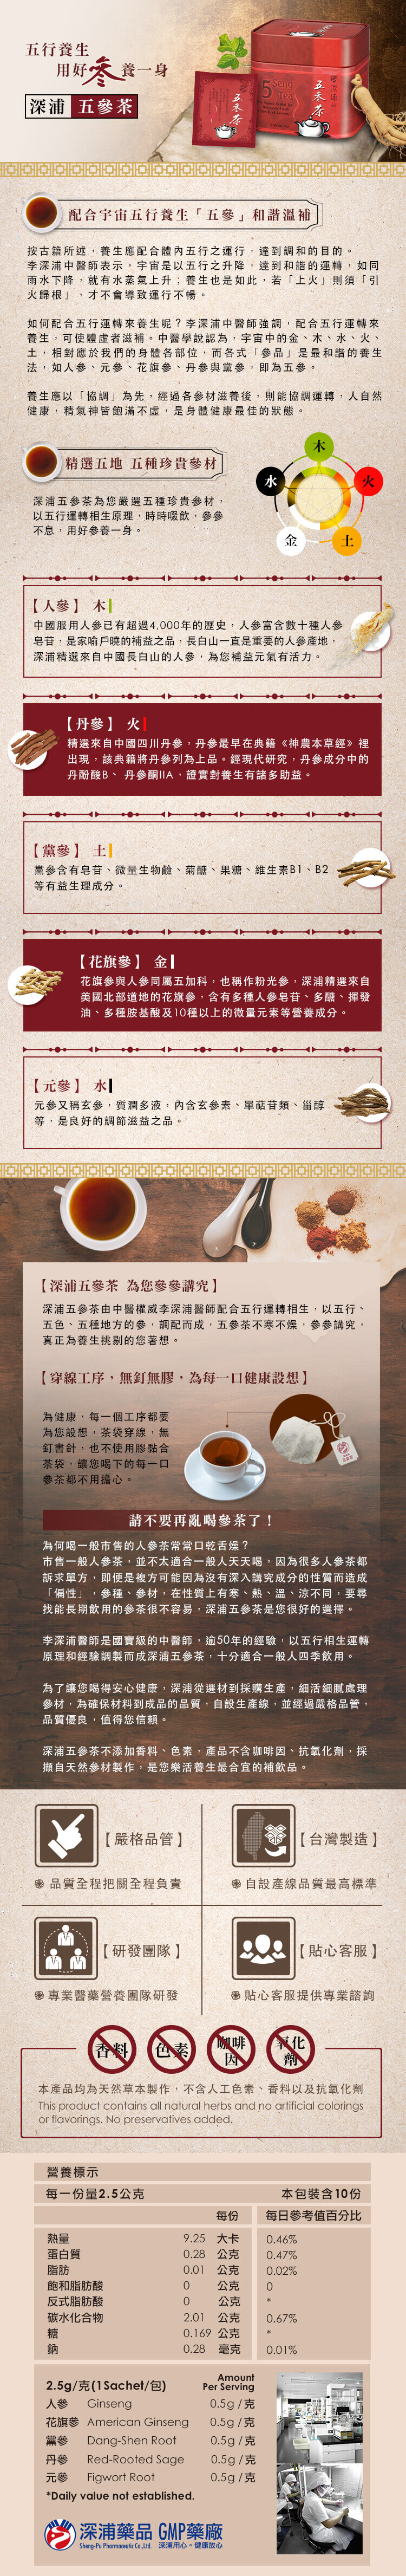 五參茶產品資訊